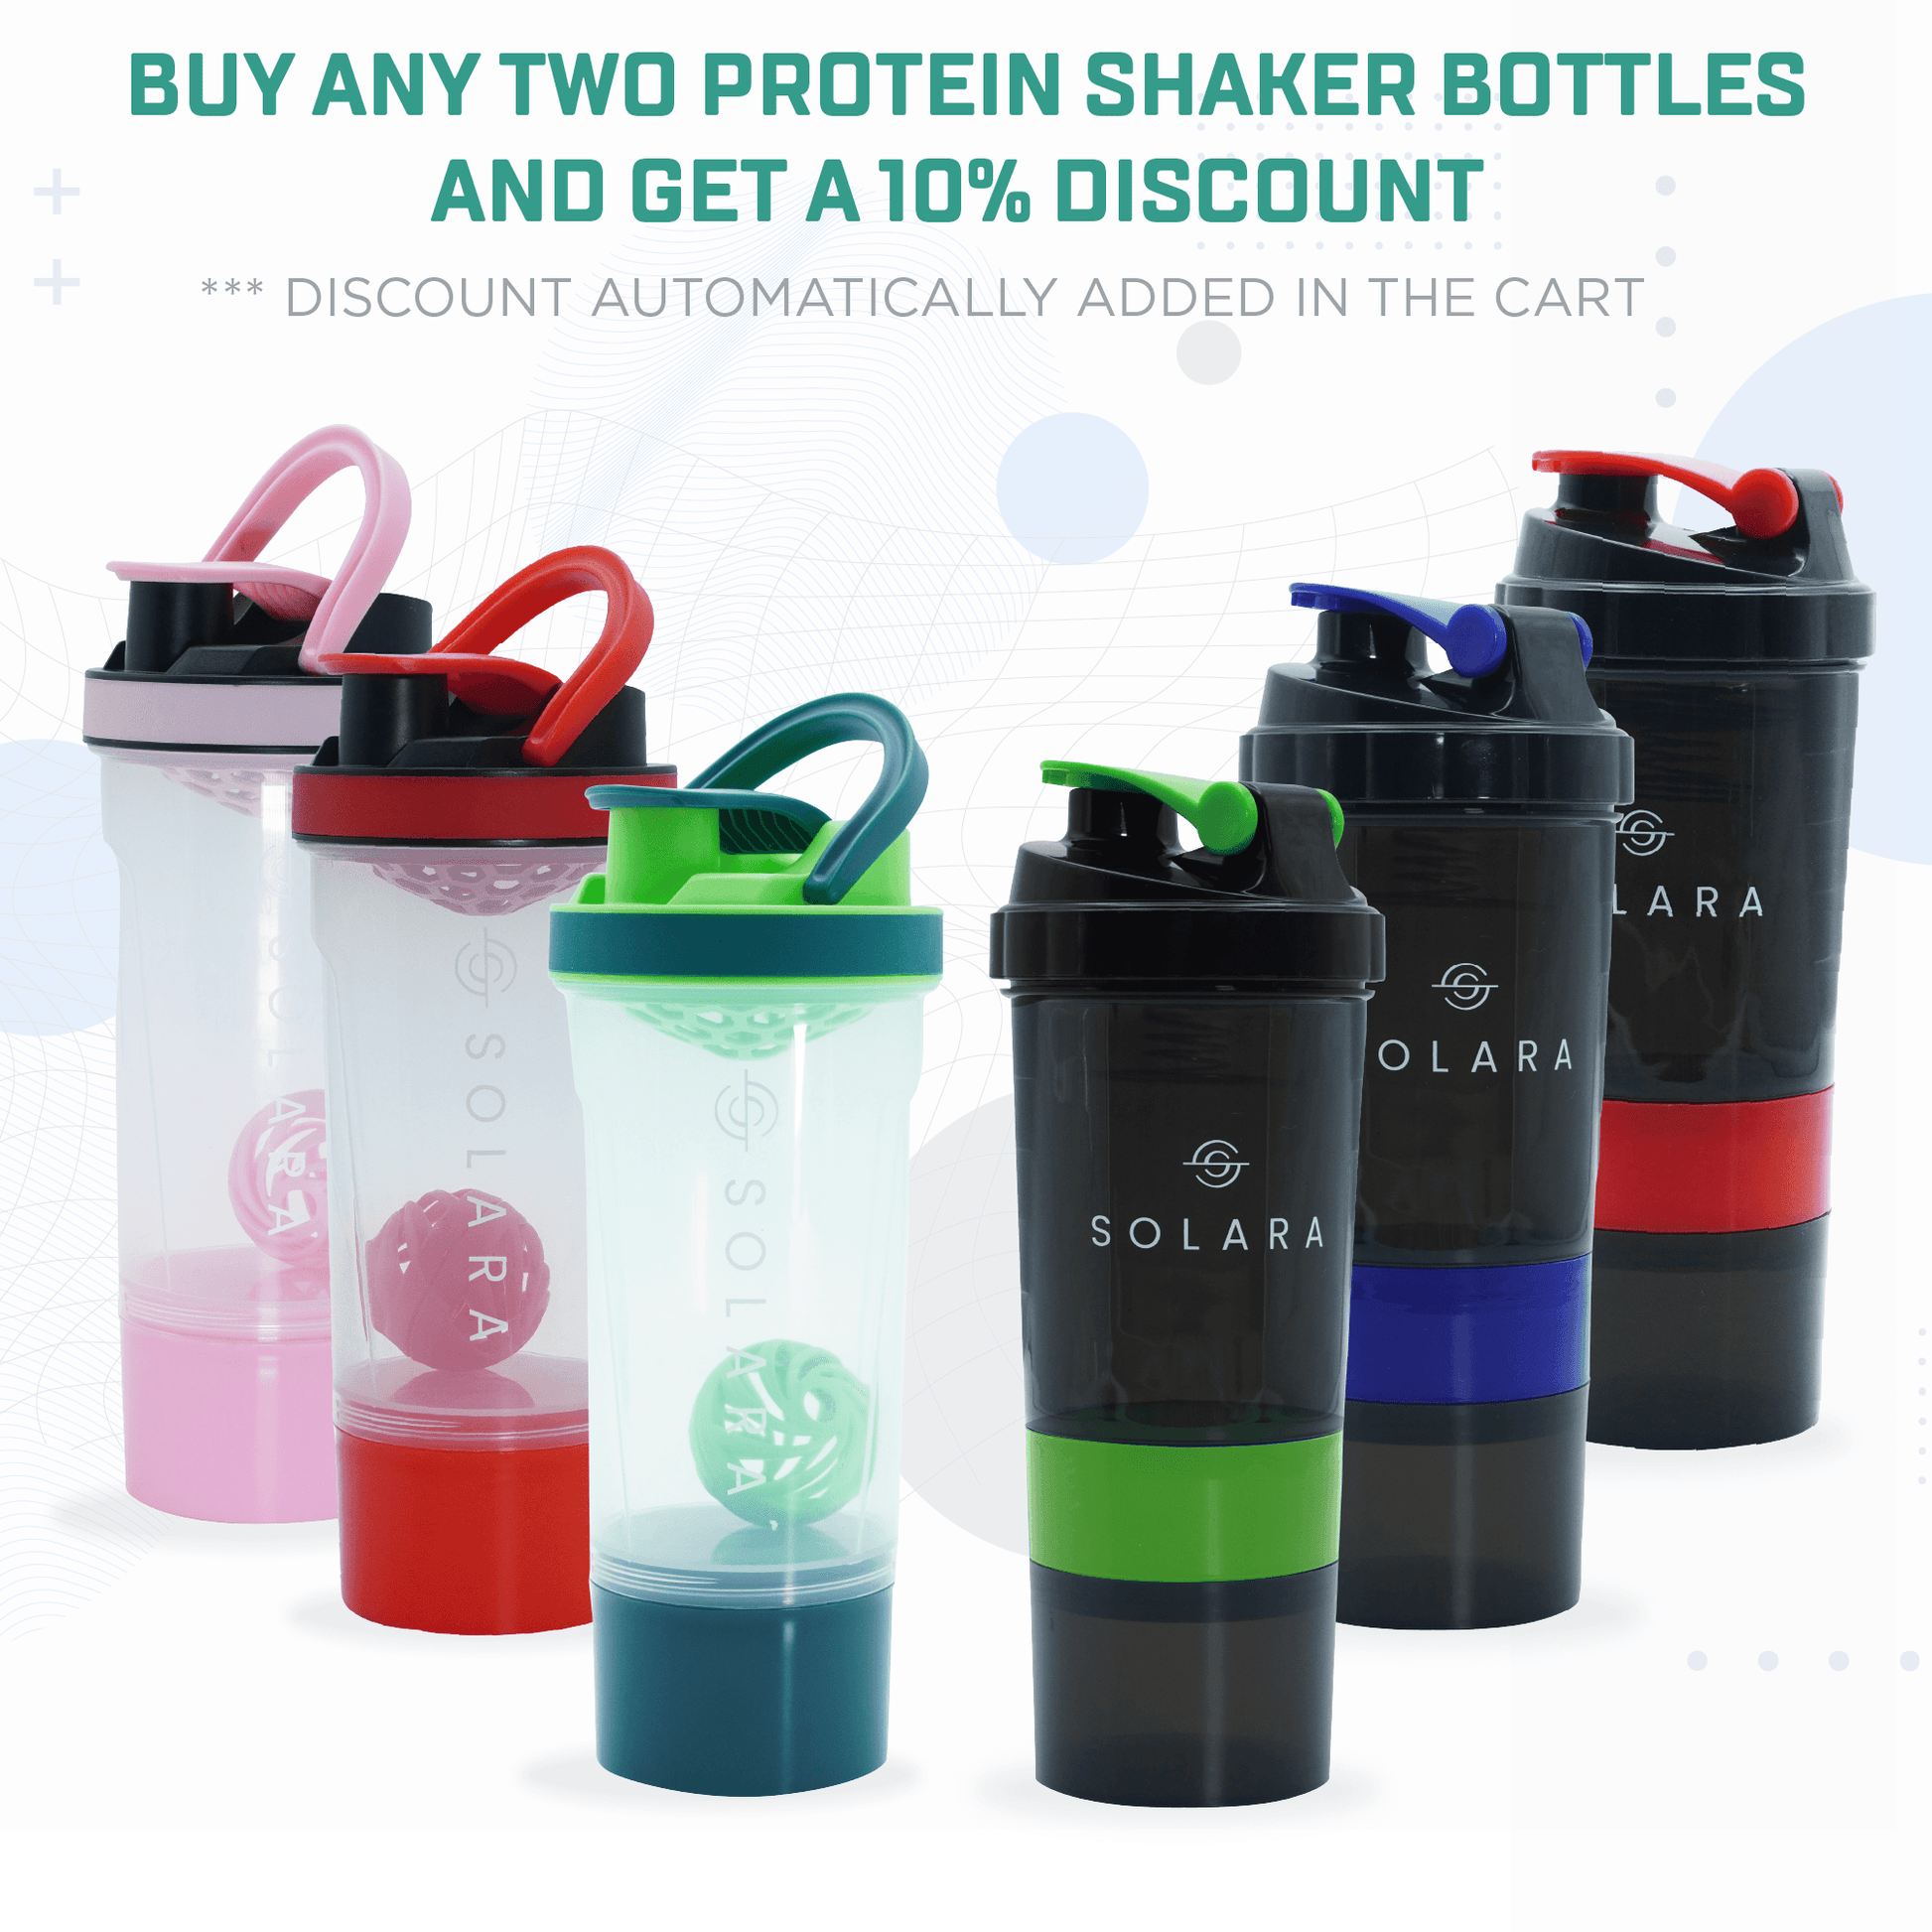 Solara Protein Shaker Bottles Online